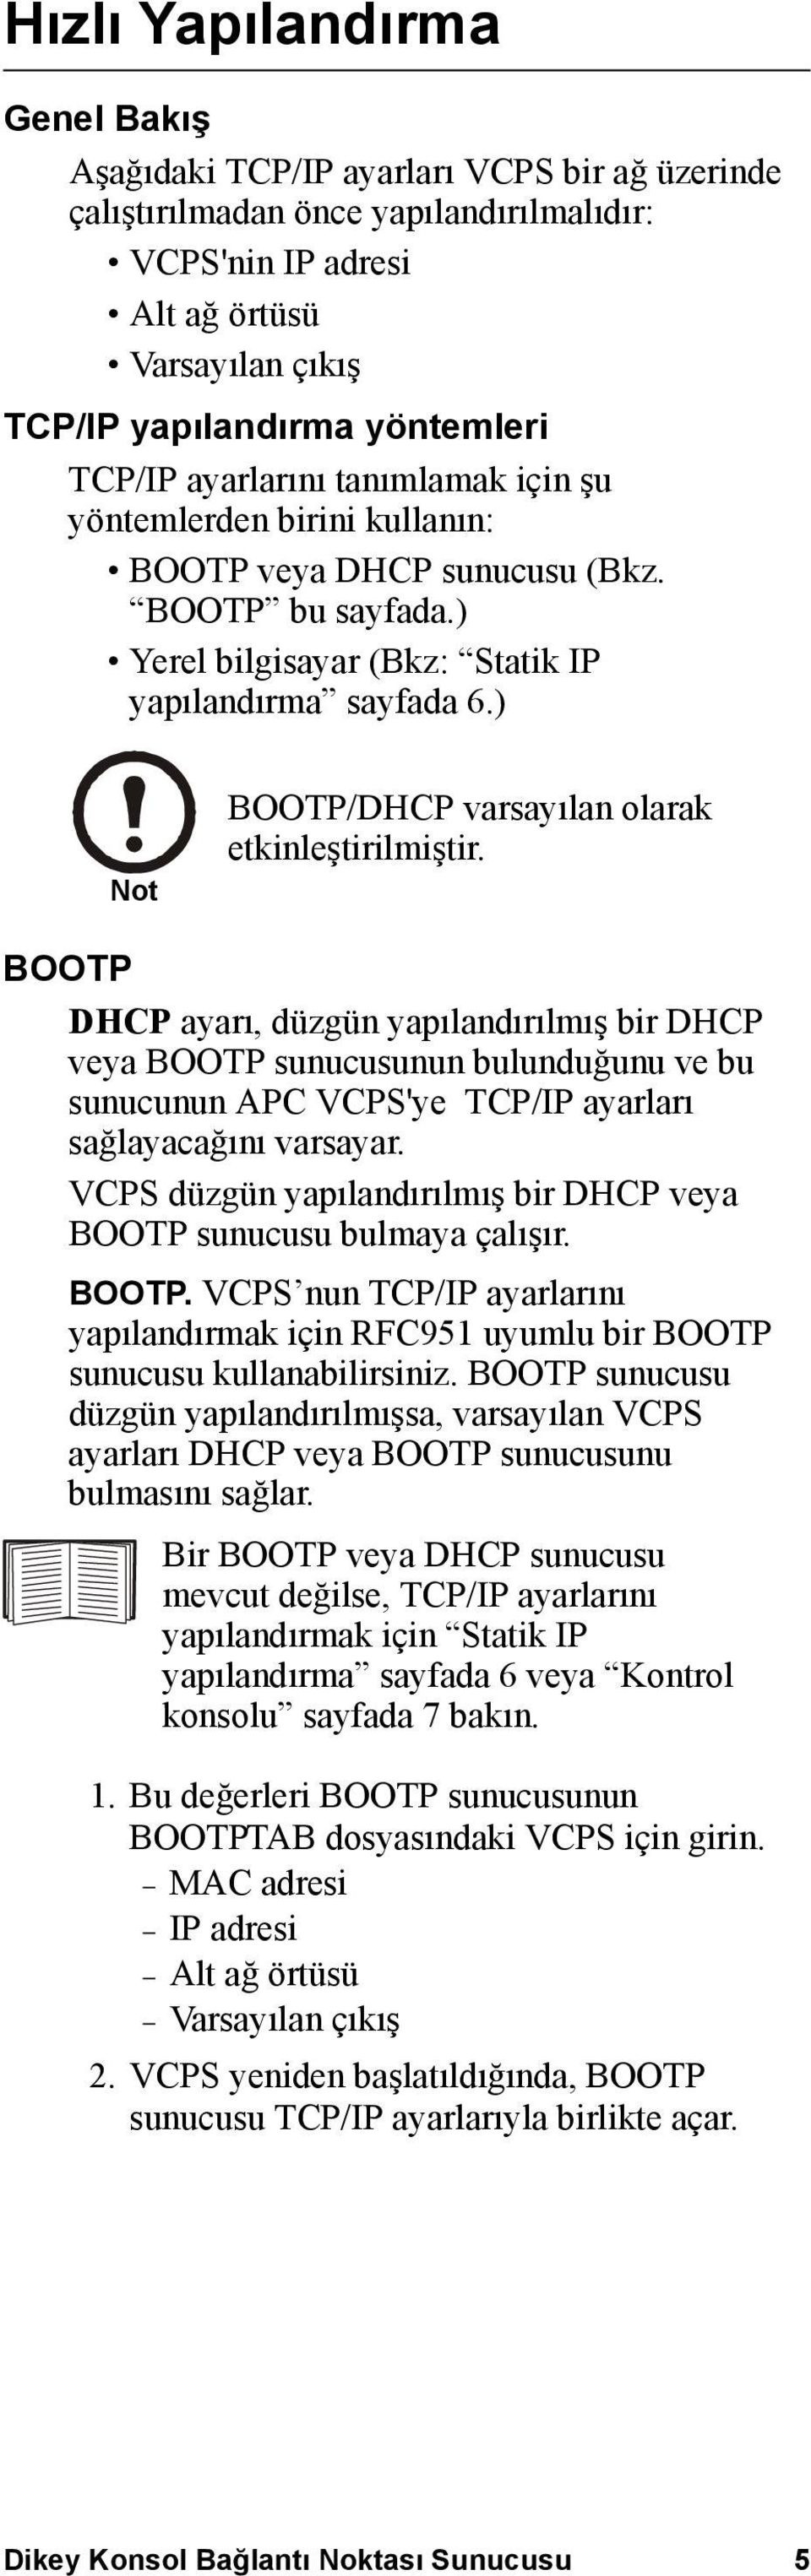 ) Note BOOTP/DHCP varsayılan olarak etkinleştirilmiştir.